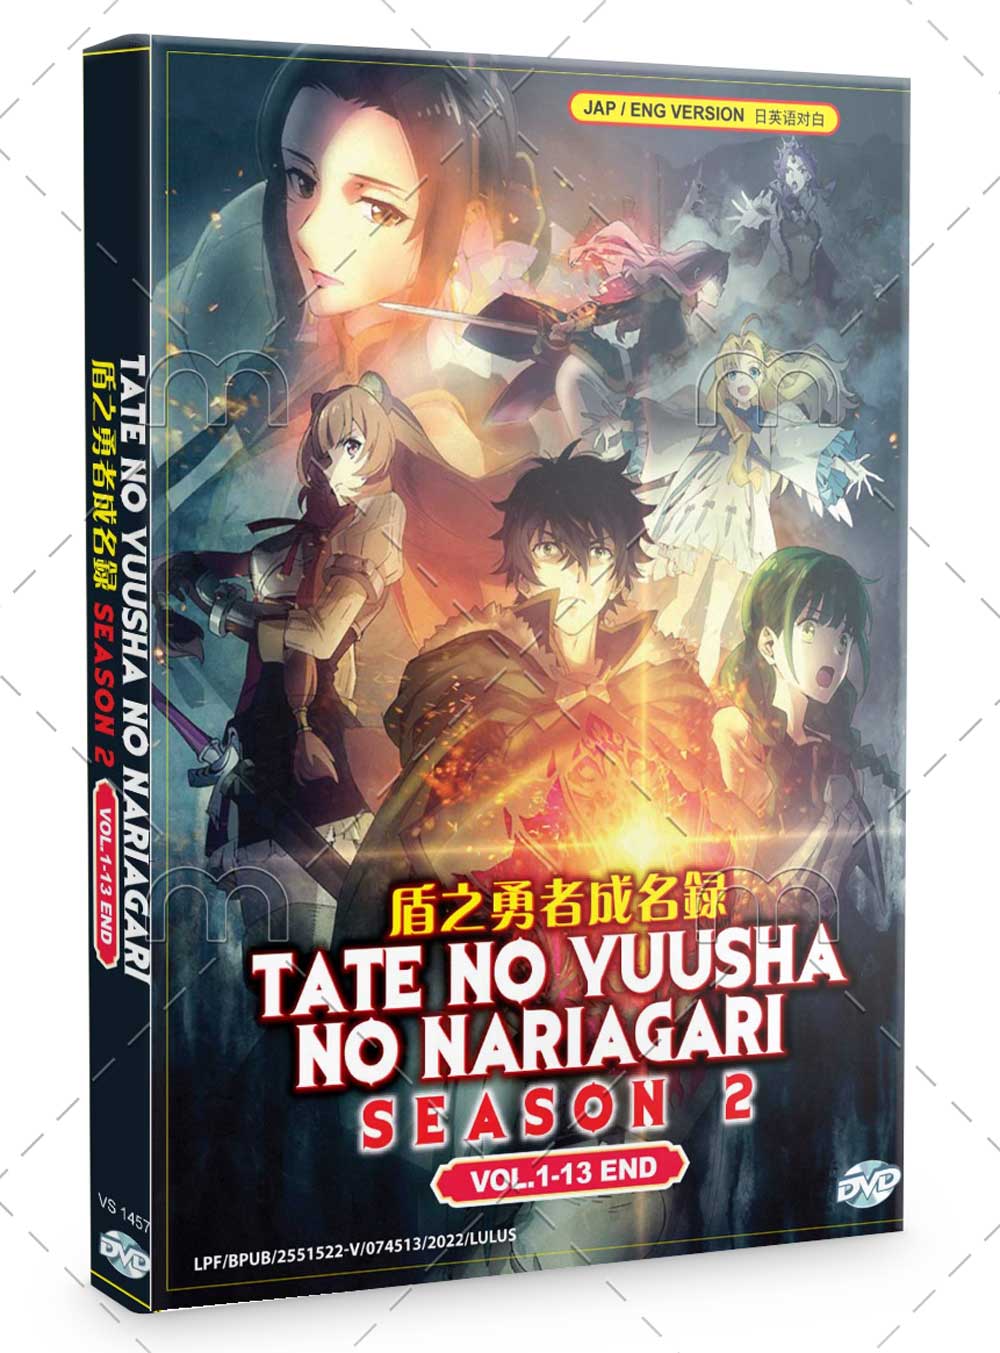 Tate No Yuusha No Nariagari Season 2 (DVD) (2022) Anime | Ep: 1-13 end  (English Sub)